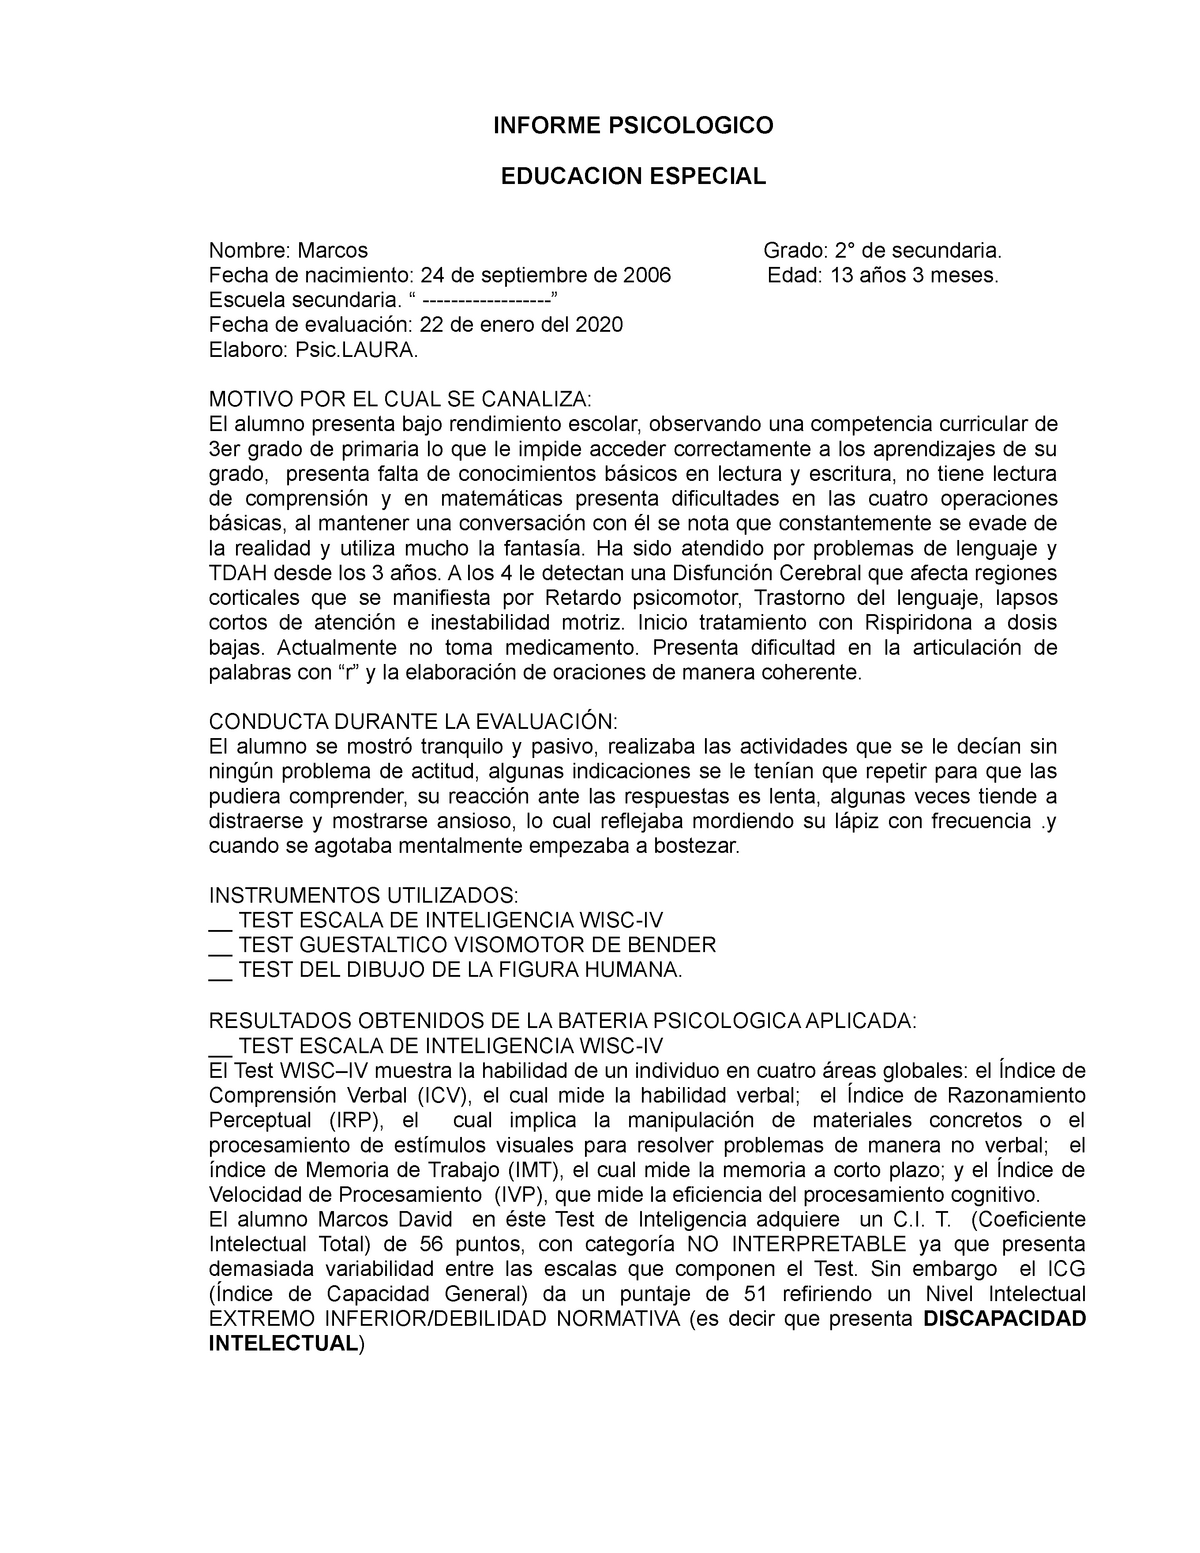 Ejemplo de Informe Psicológico de un alumno con discapacidad intelectual -  INFORME PSICOLOGICO - Studocu